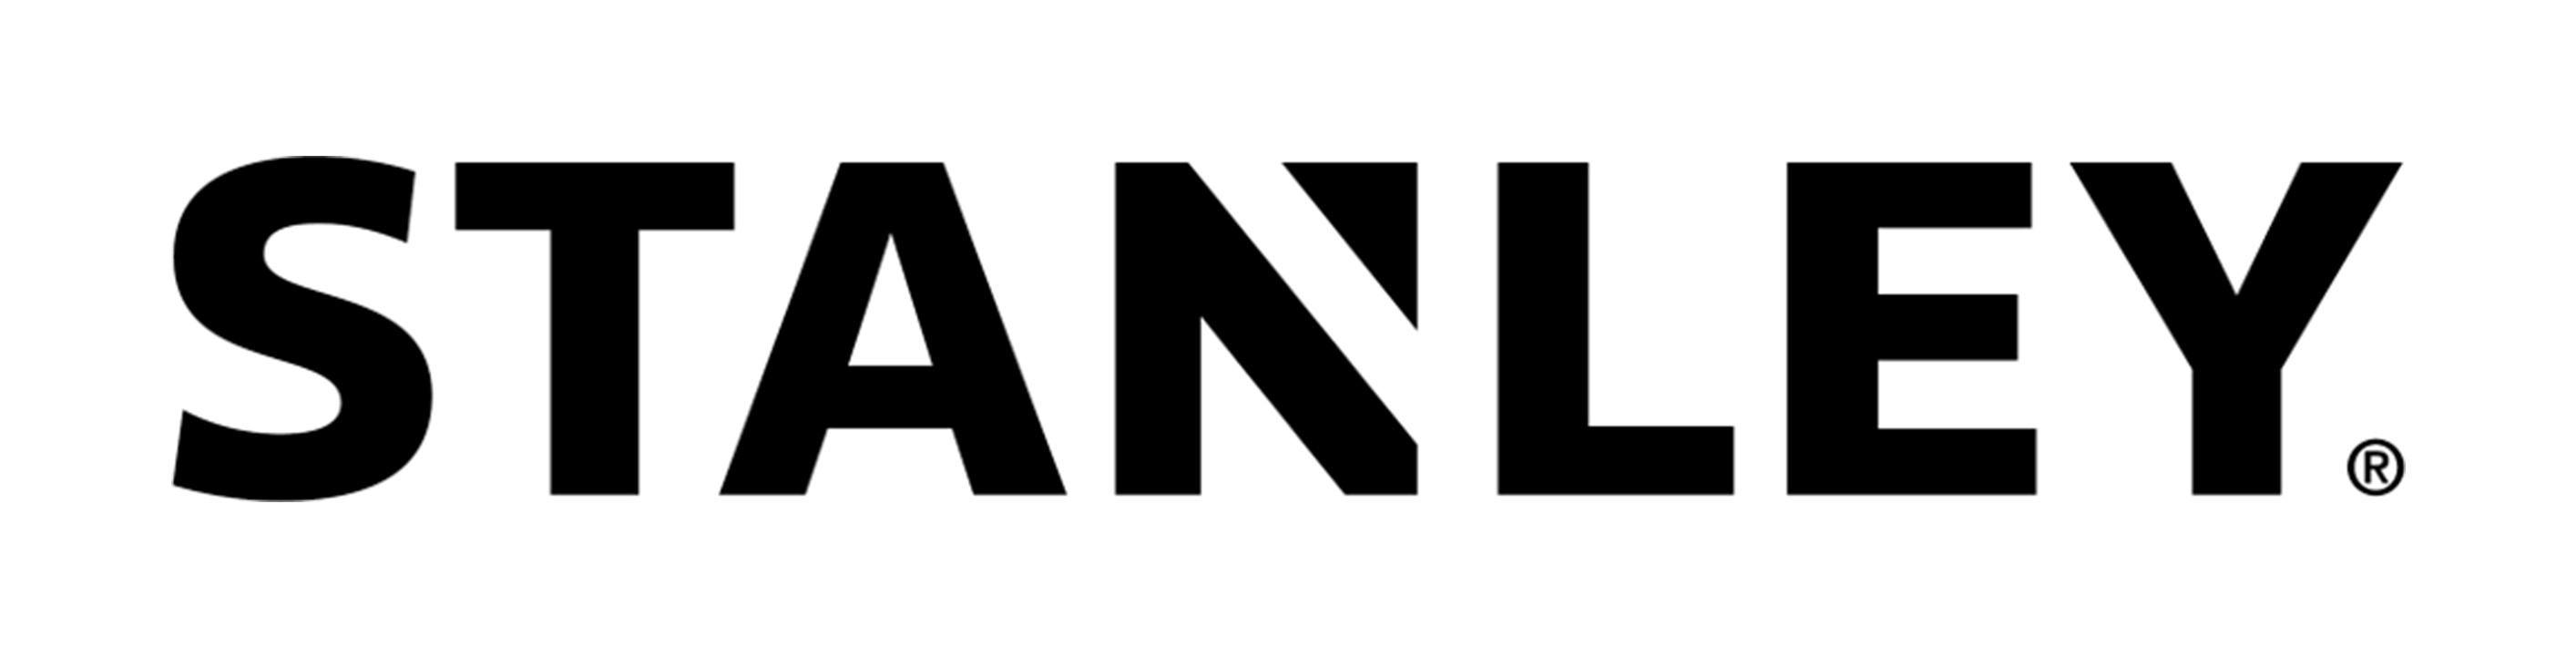 stnaley logo 2